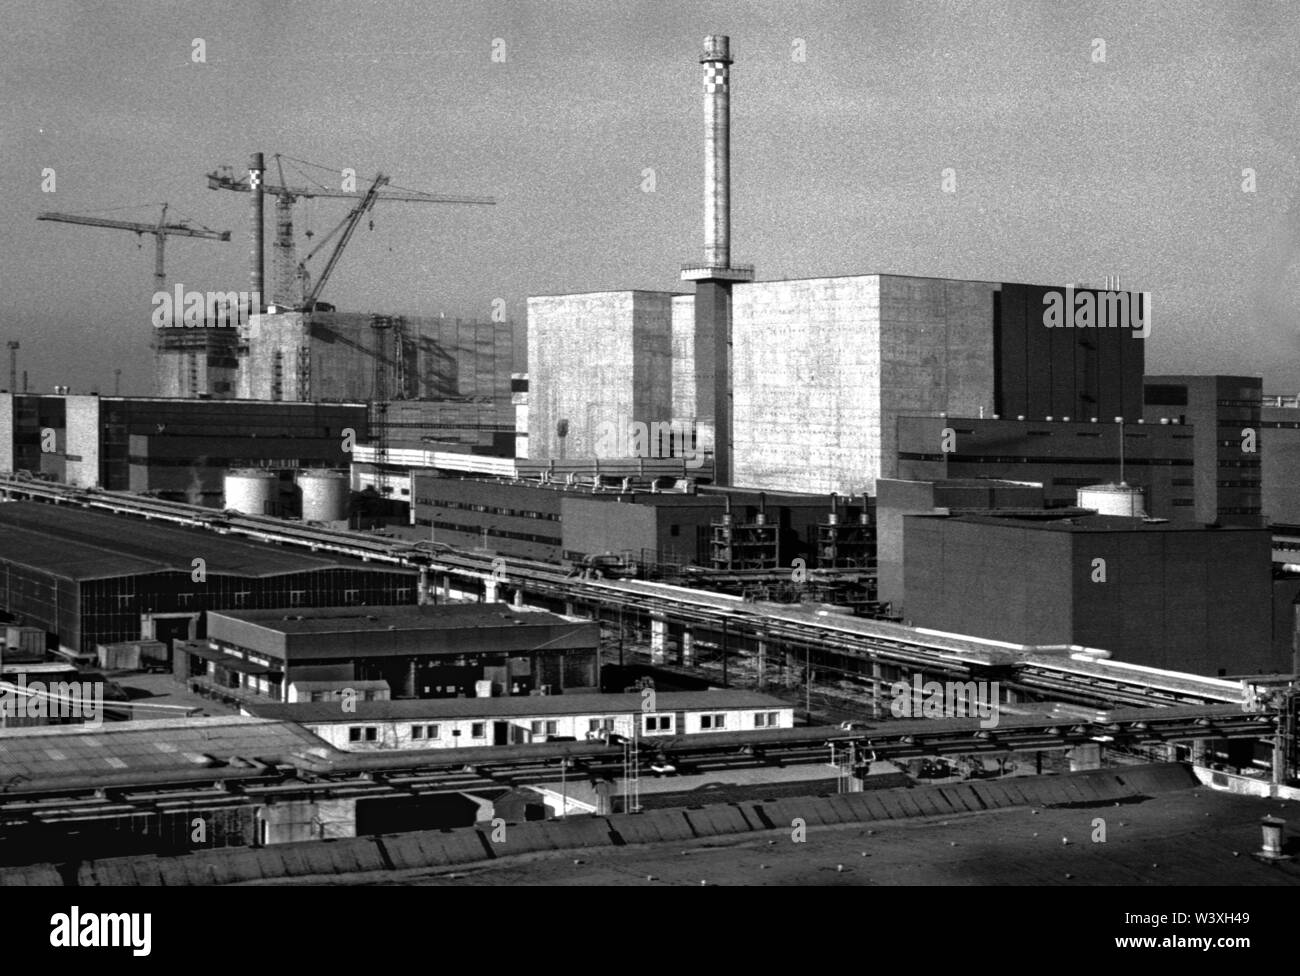 Eingereicht - 01. Januar 1990, Berlin, Lubmin: Mecklenburg-vorpommern/DDR/1990 Kernkraftwerk Lubmin bei Greifswald. Vor ein Fernwärme Leitung und ein Parkplatz. Block 5 befindet sich noch im Aufbau. Ein wenig später, das Kraftwerk aus Sicherheitsgründen abgeschaltet. Später, ein Zwischenlager für radioaktive Abfälle werden dort eingestellt werden. Die Technologie des KKW war Sowjetische. Insgesamt wurden 5 Blöcke geplant, 4 in Betrieb waren, jeder mit einer Leistung von 400 MW. Alle in 1990 // Atom/Energie/Reaktor/Atom/Atomkraft/Föderalen stillgelegt Staaten Foto: Paul Glaser/d Stockfoto